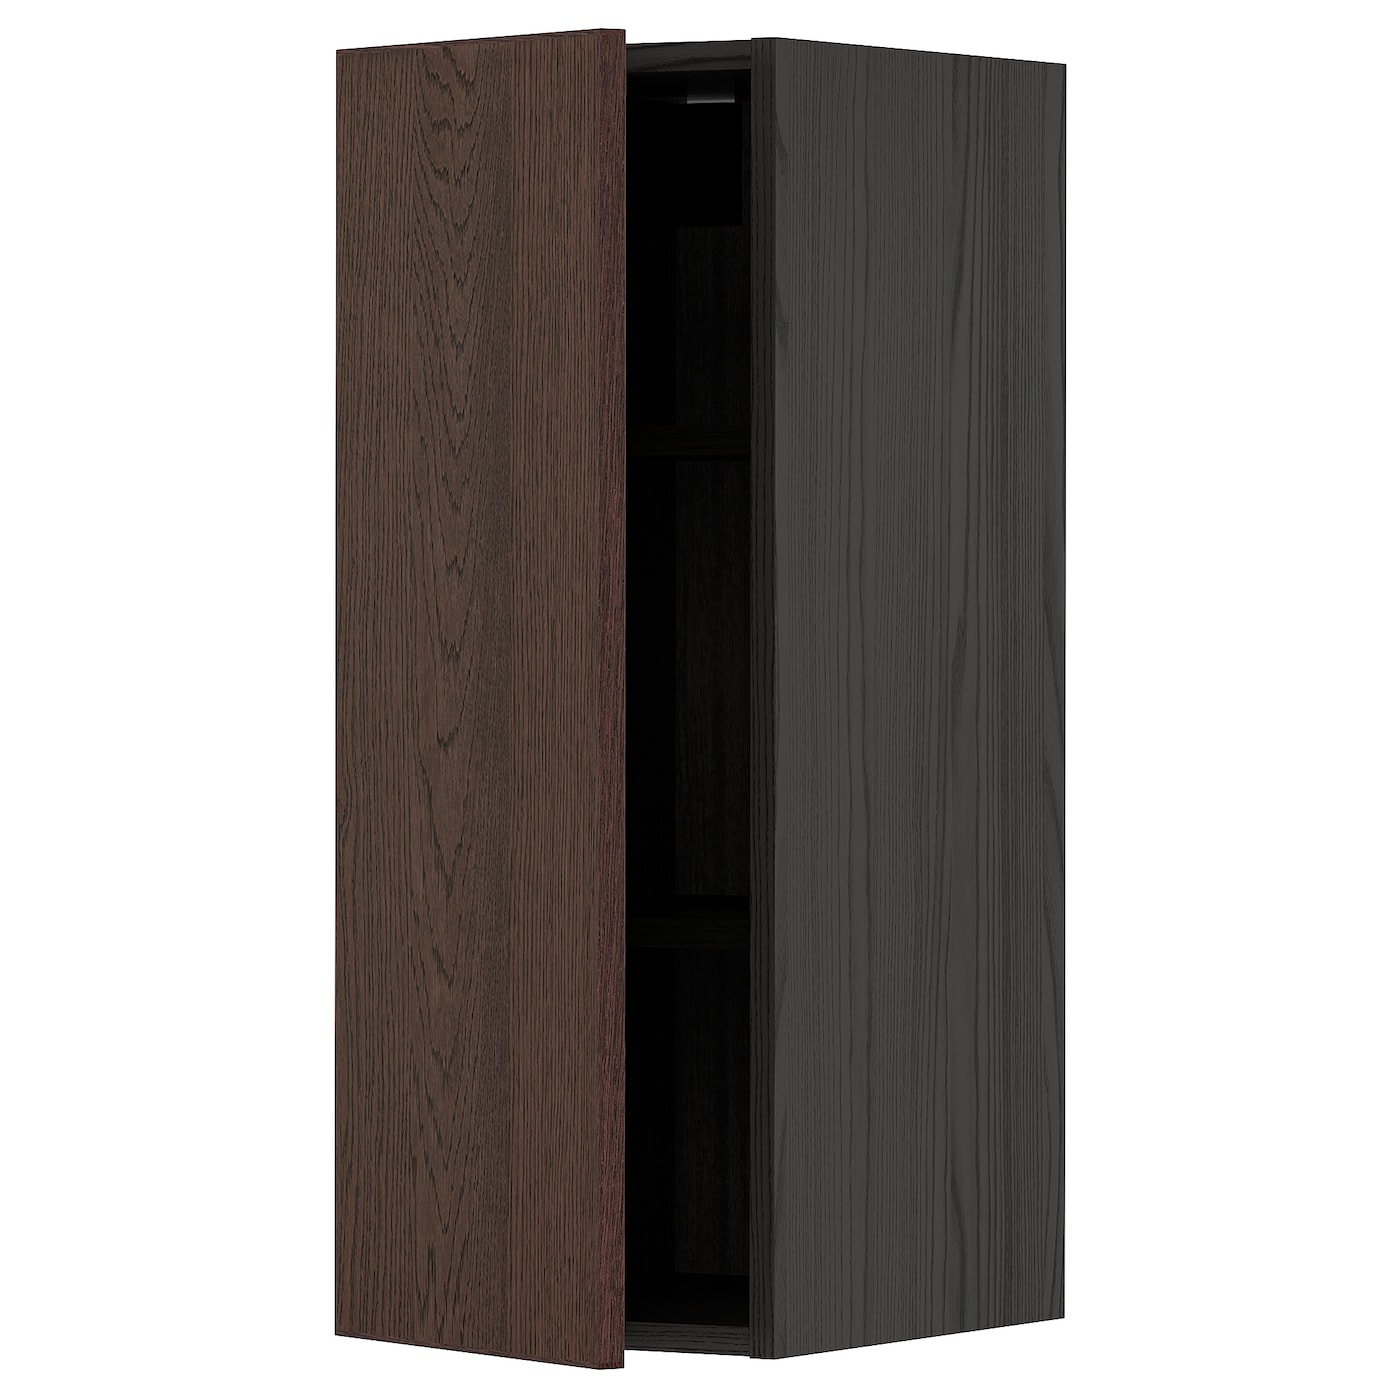 Навесной шкаф с полкой - METOD IKEA/ МЕТОД ИКЕА, 80х30 см, коричневый/черный